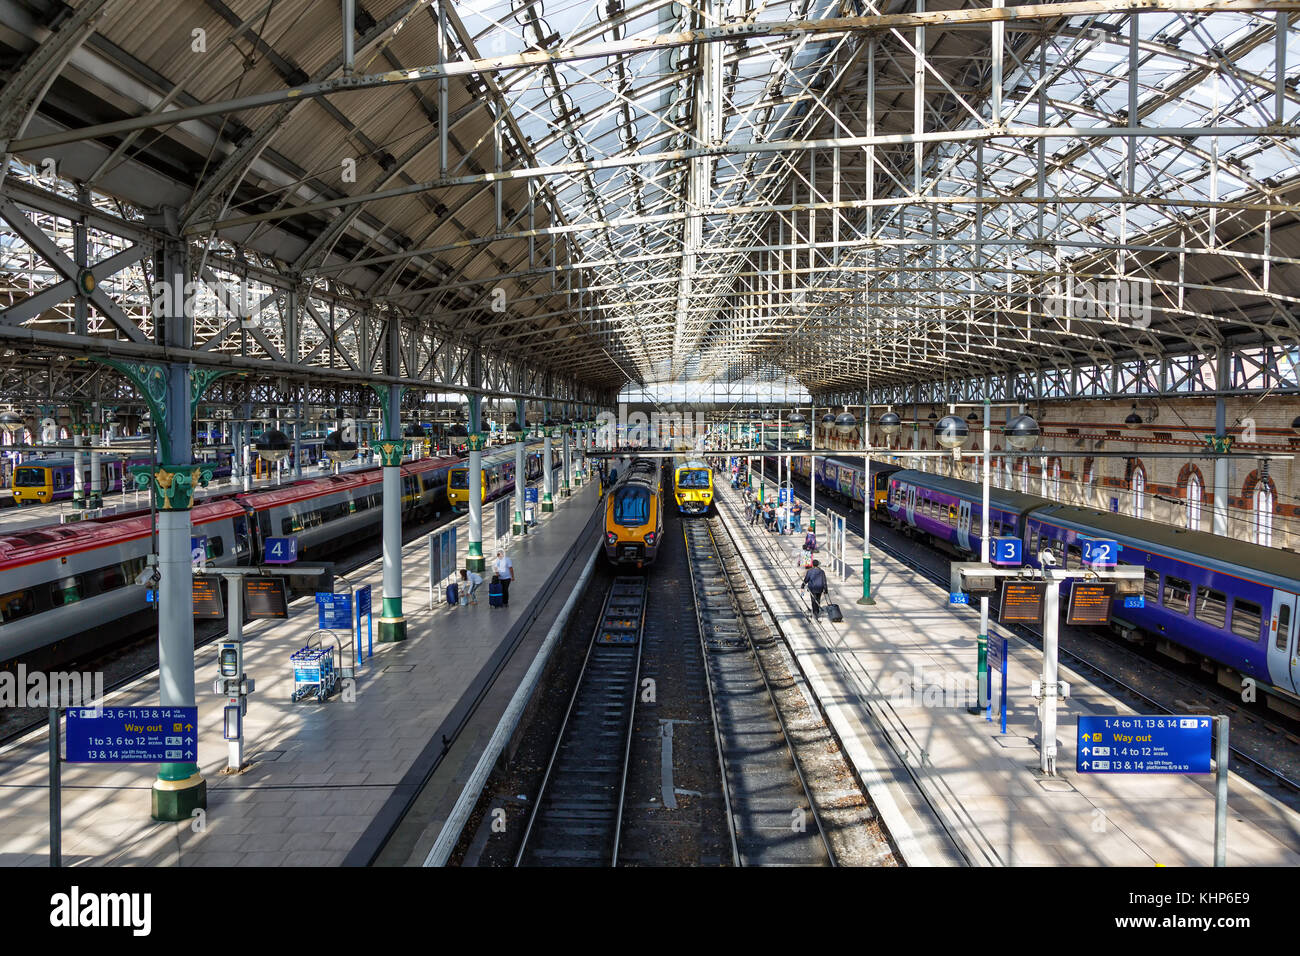 Manchester, Großbritannien - 15 August 2017: Manchester Piccadilly Station in Großbritannien Stockfoto